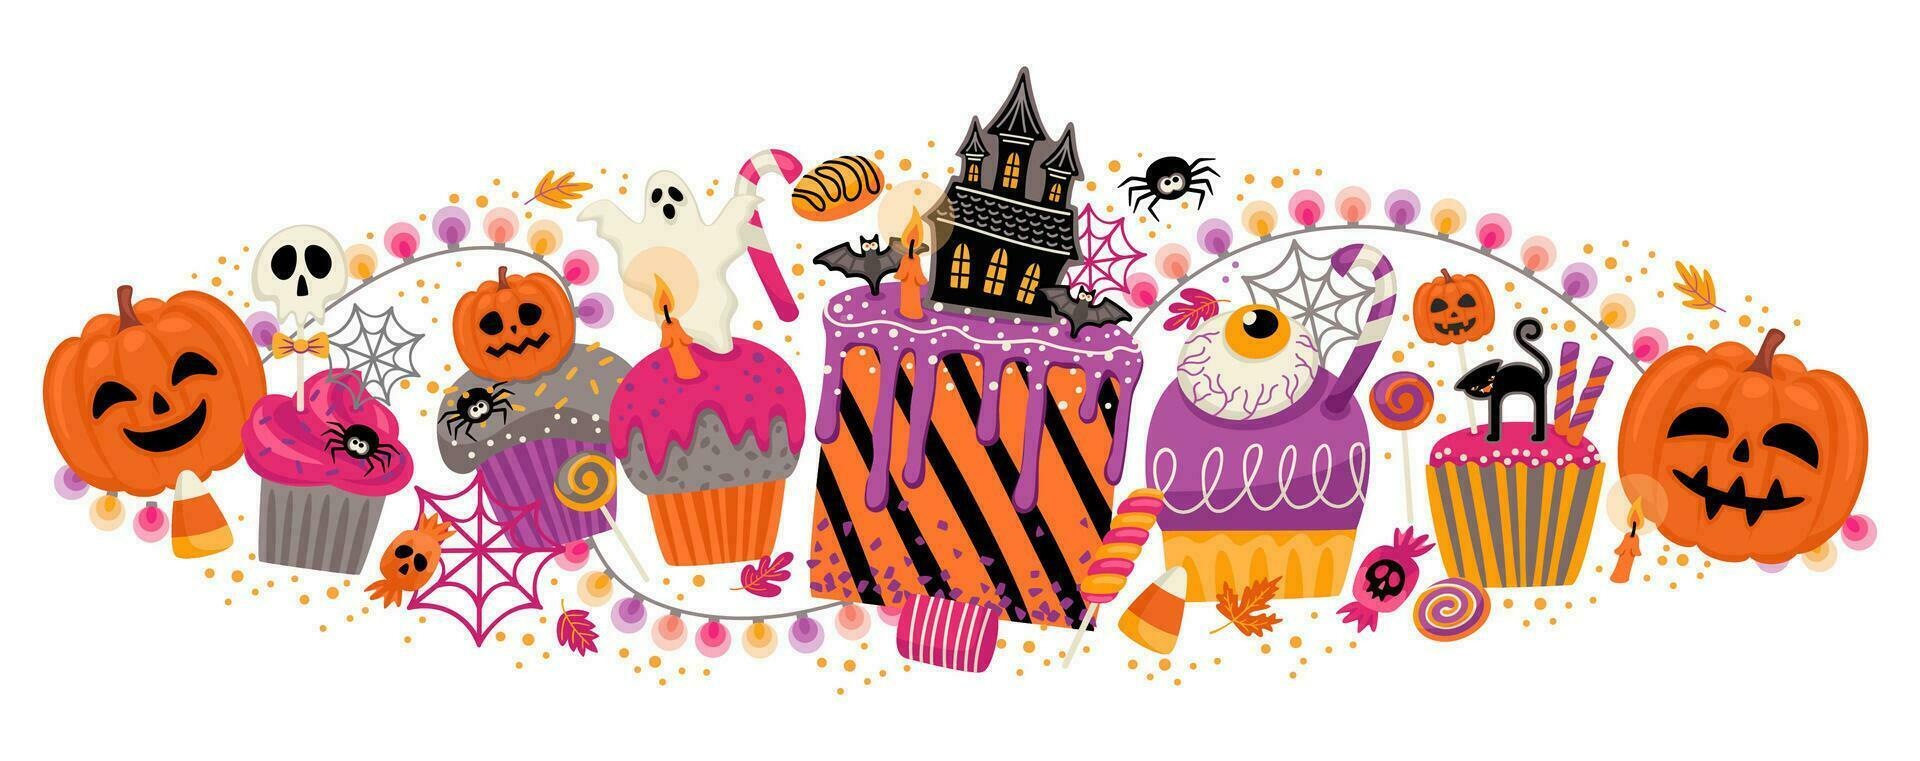 Halloween illustration. décoré petits gâteaux, muffins, des pâtisseries bonbons des sucreries vecteur modèle pour bannière, carte, affiche, la toile et autre utilisation